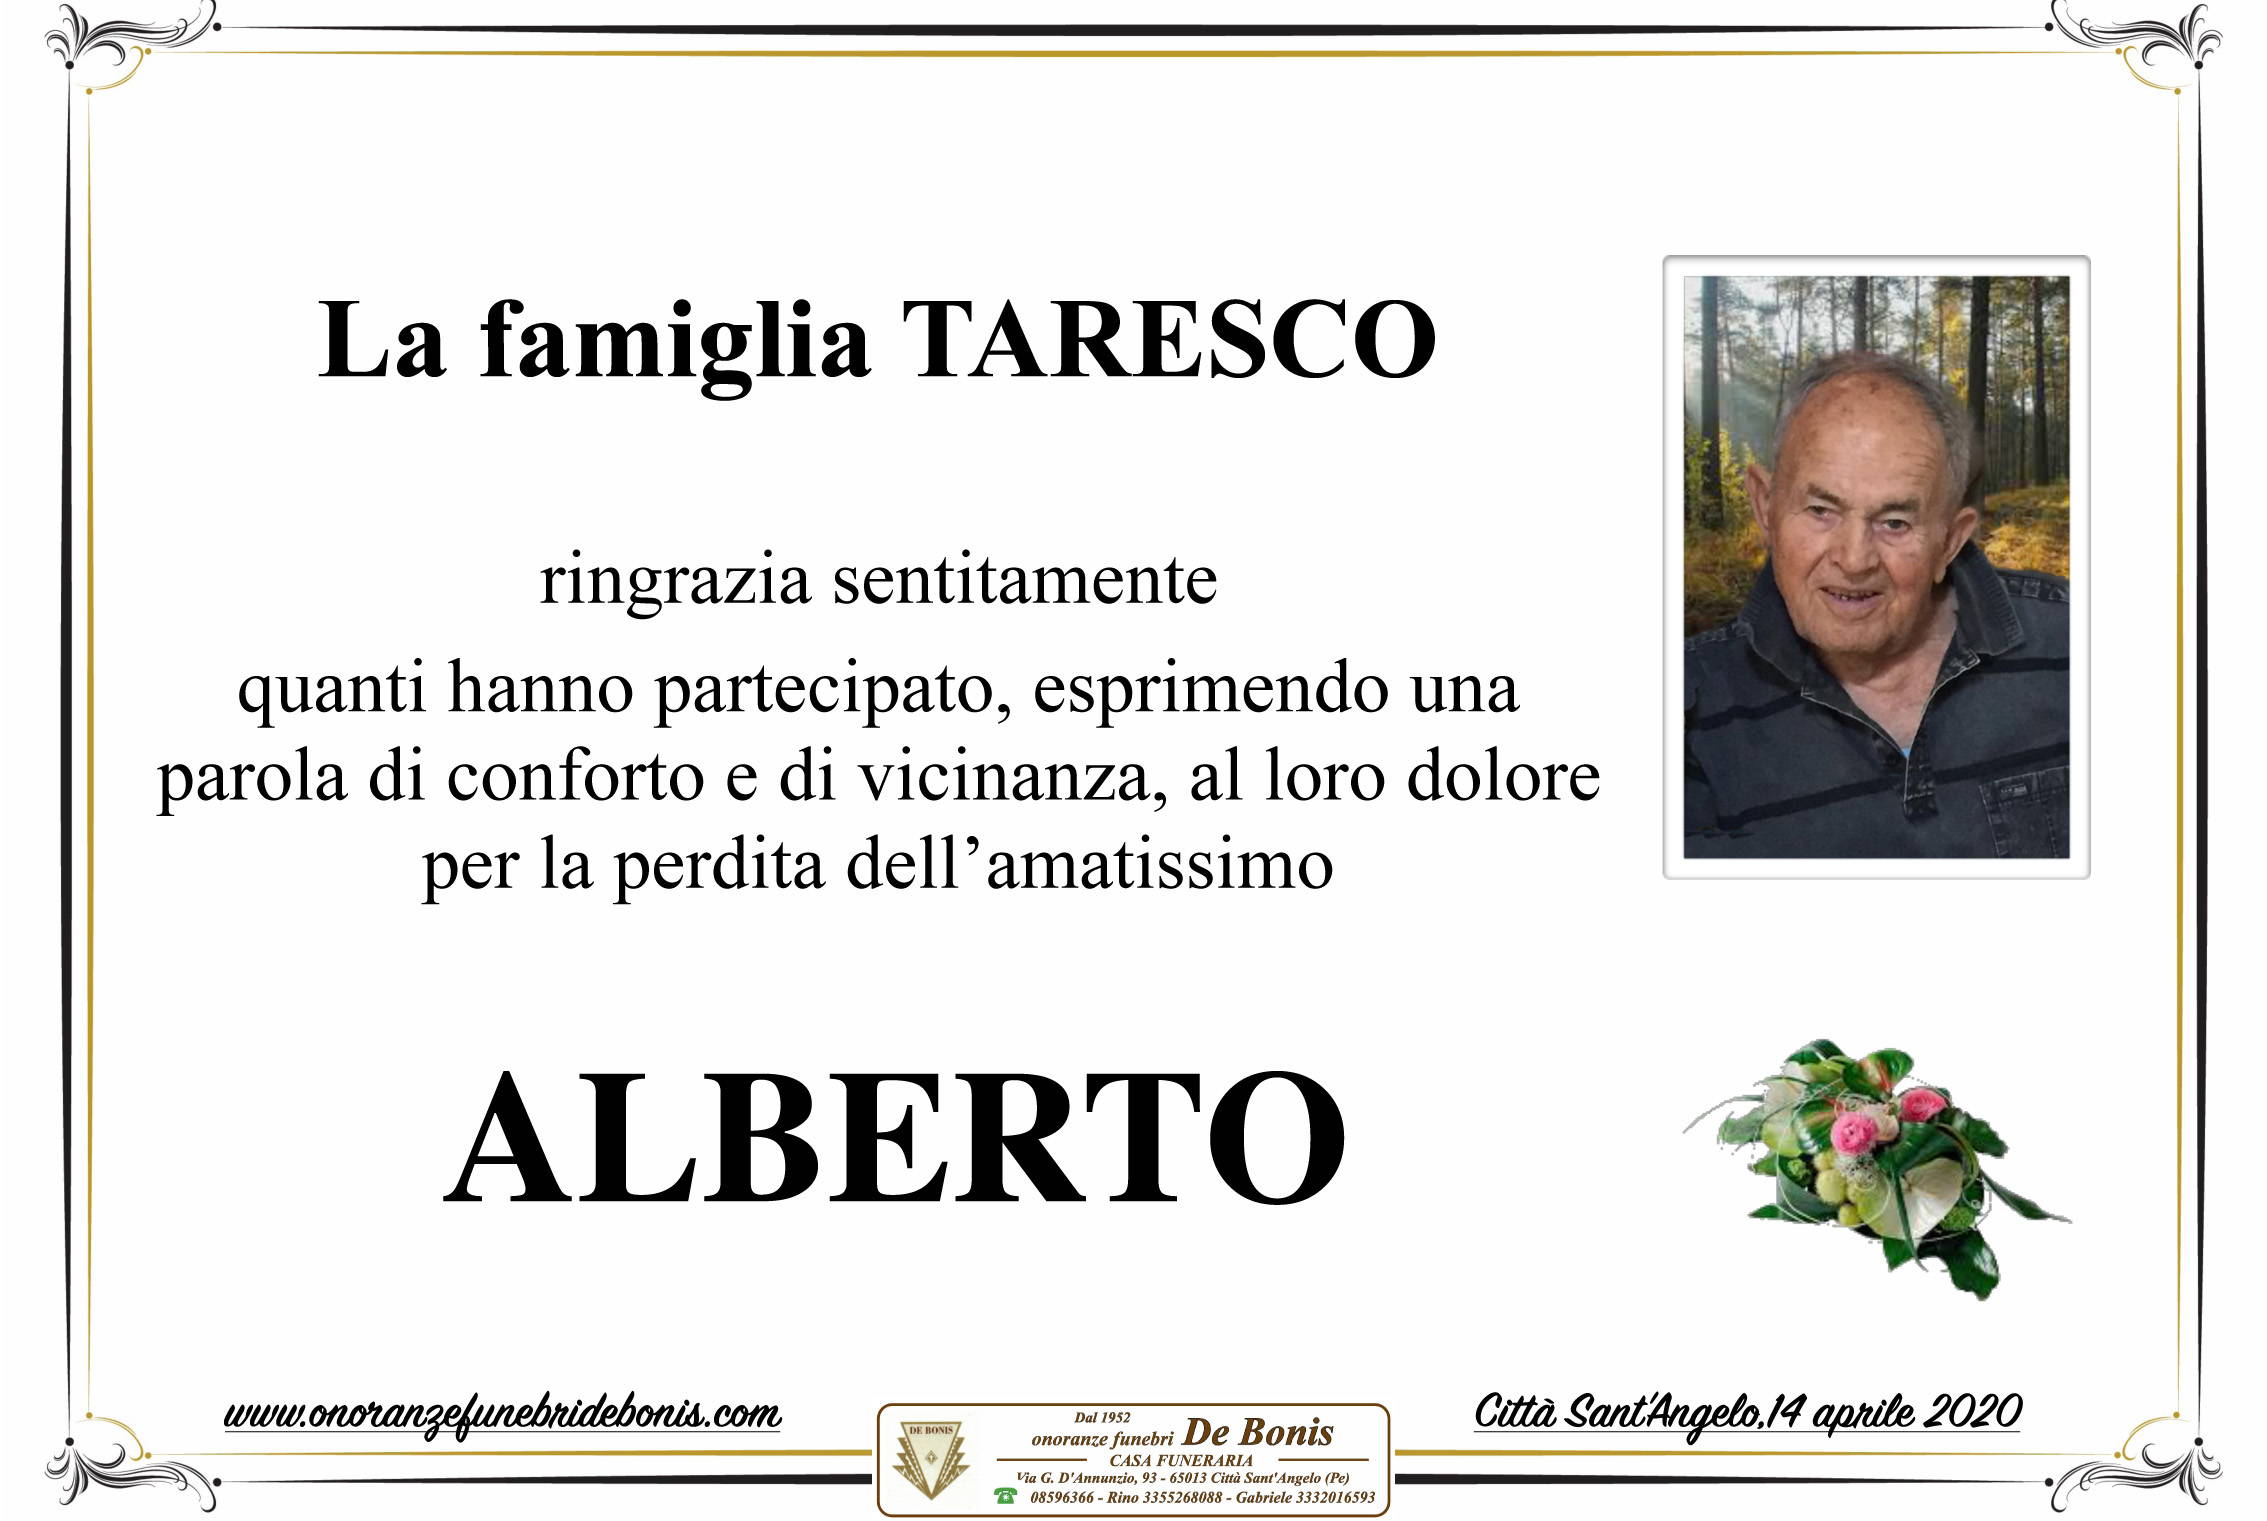 Alberto Taresco